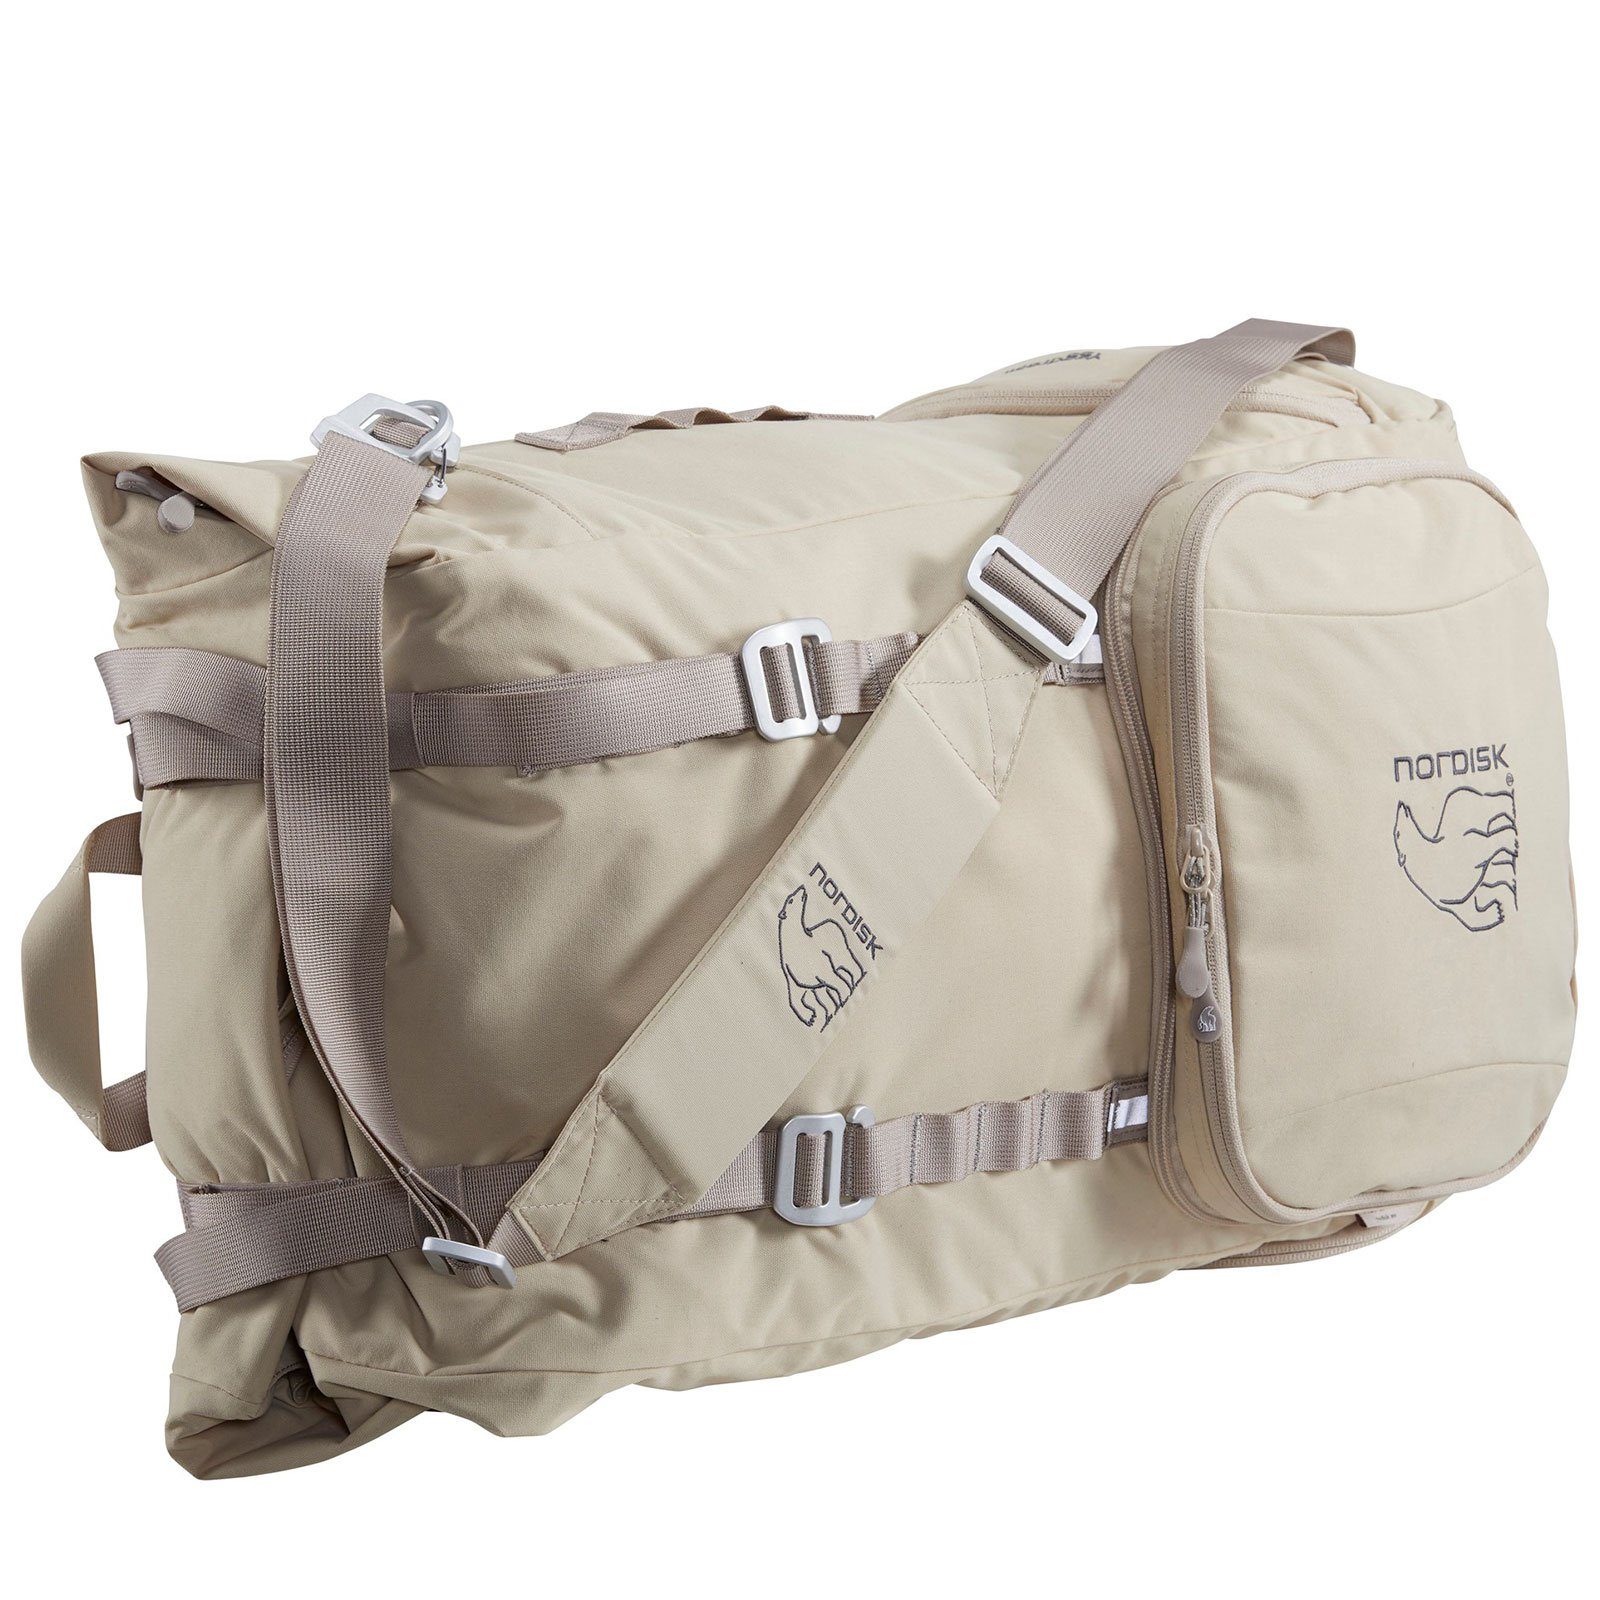 Nordisk Bag, Yggdrasil Tasche L 37 Reise Duffle Trekkingrucksack Camping Trekkingrucksack Rucksack